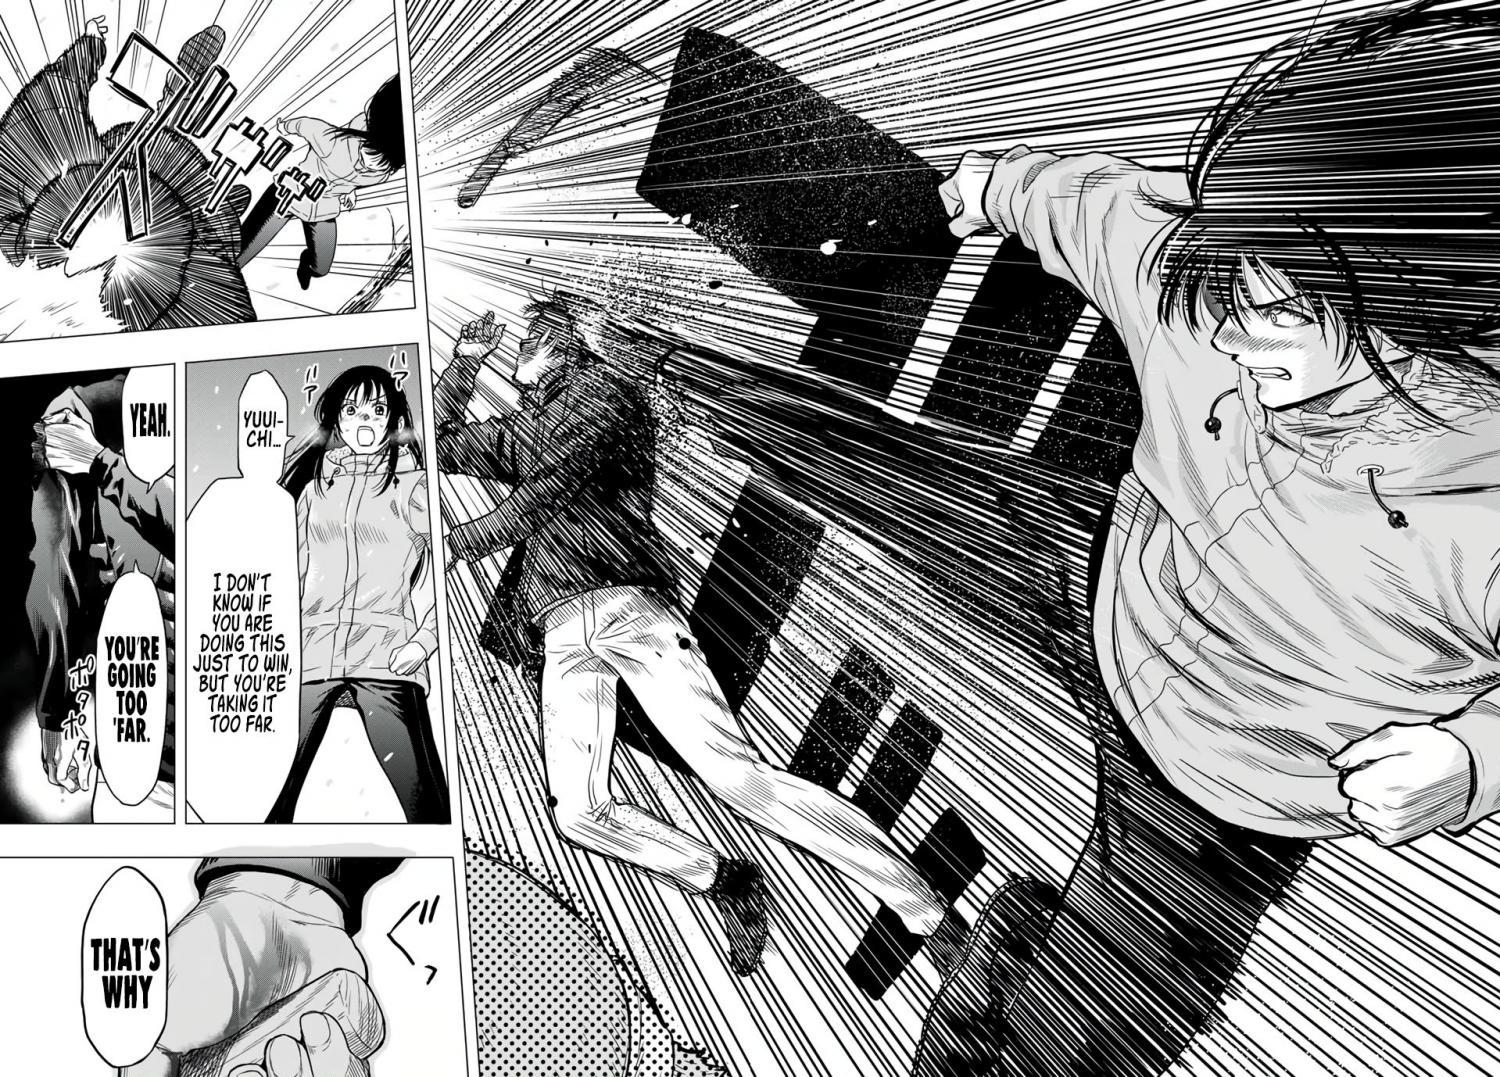 Tomodachi Game Vol.11 Ch.98 Page 1 - Mangago